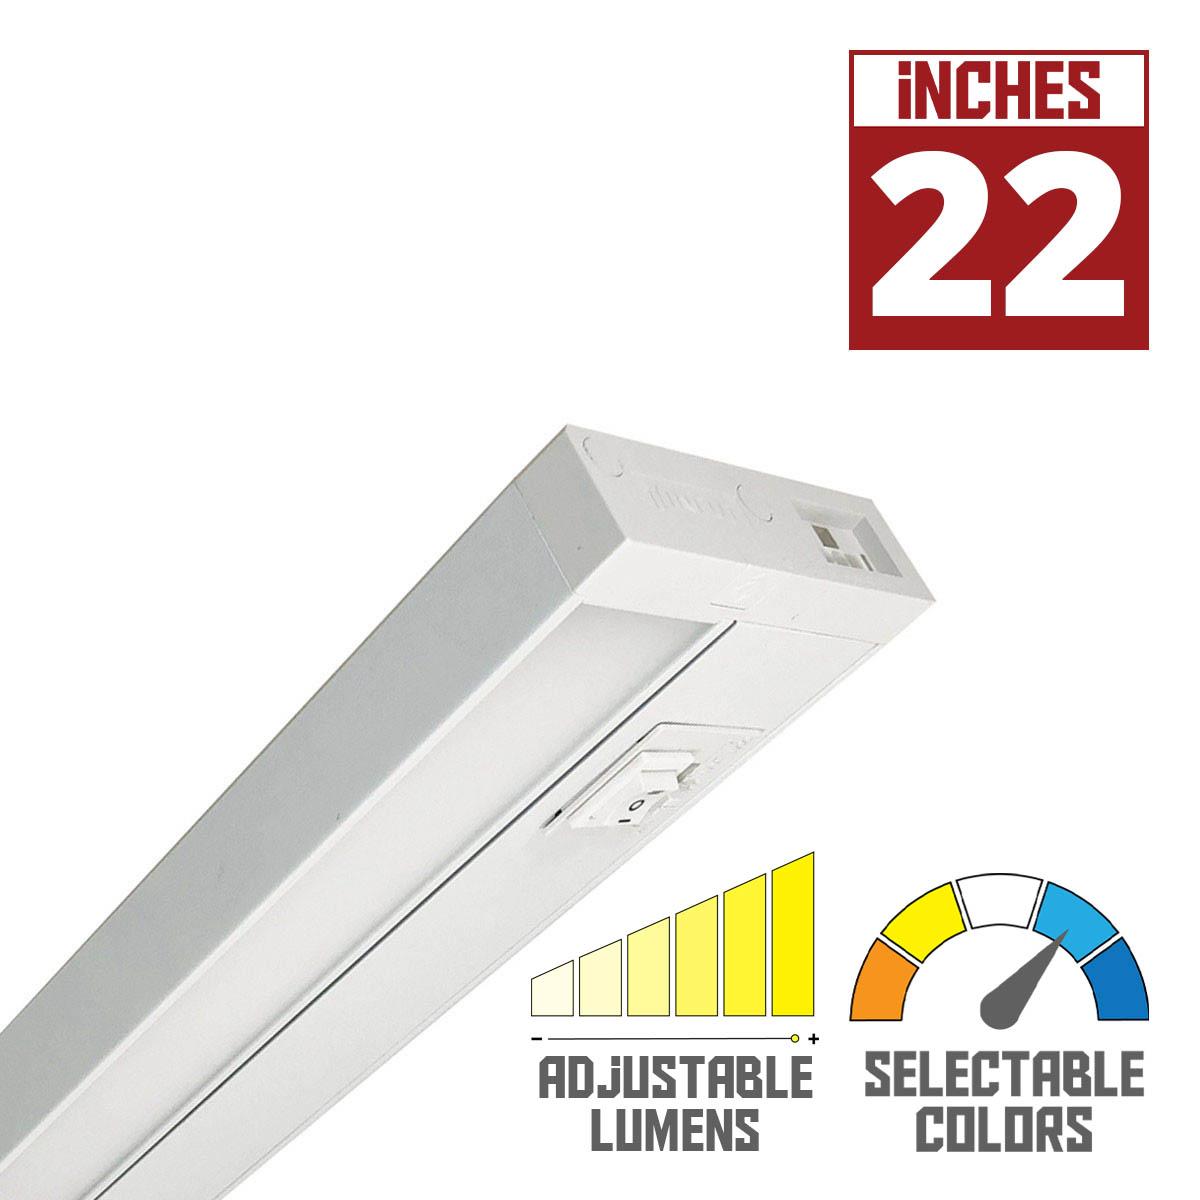 LEDUR TW 22 Inch EdgeLit Under Cabinet LED Light, Linkable, Adjustable Lumens 275/ 475 Lm, Field Selectable CCT 2700K to 5000K, 120V